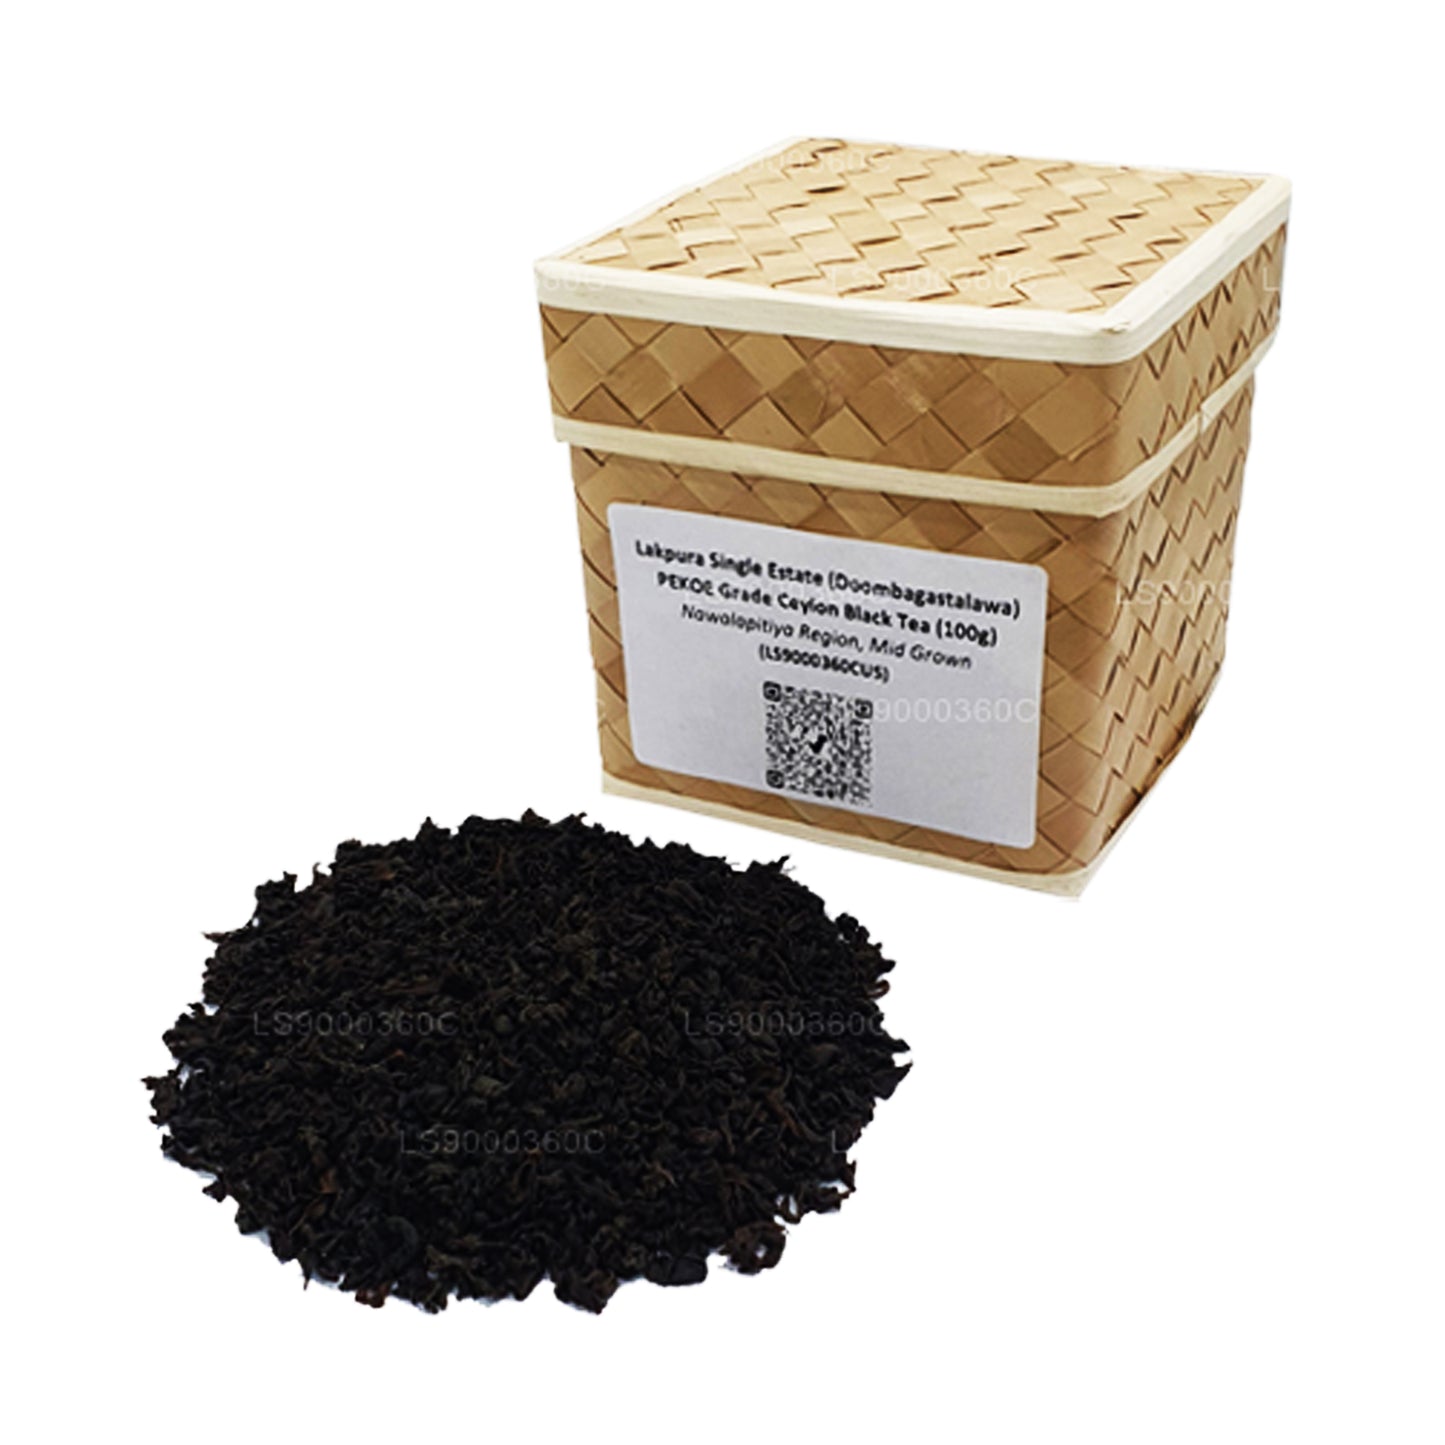 Lakpura Tek Emlak (Doombagastalawa) PEKOE Sınıfı Seylan Siyah Çay (100g)